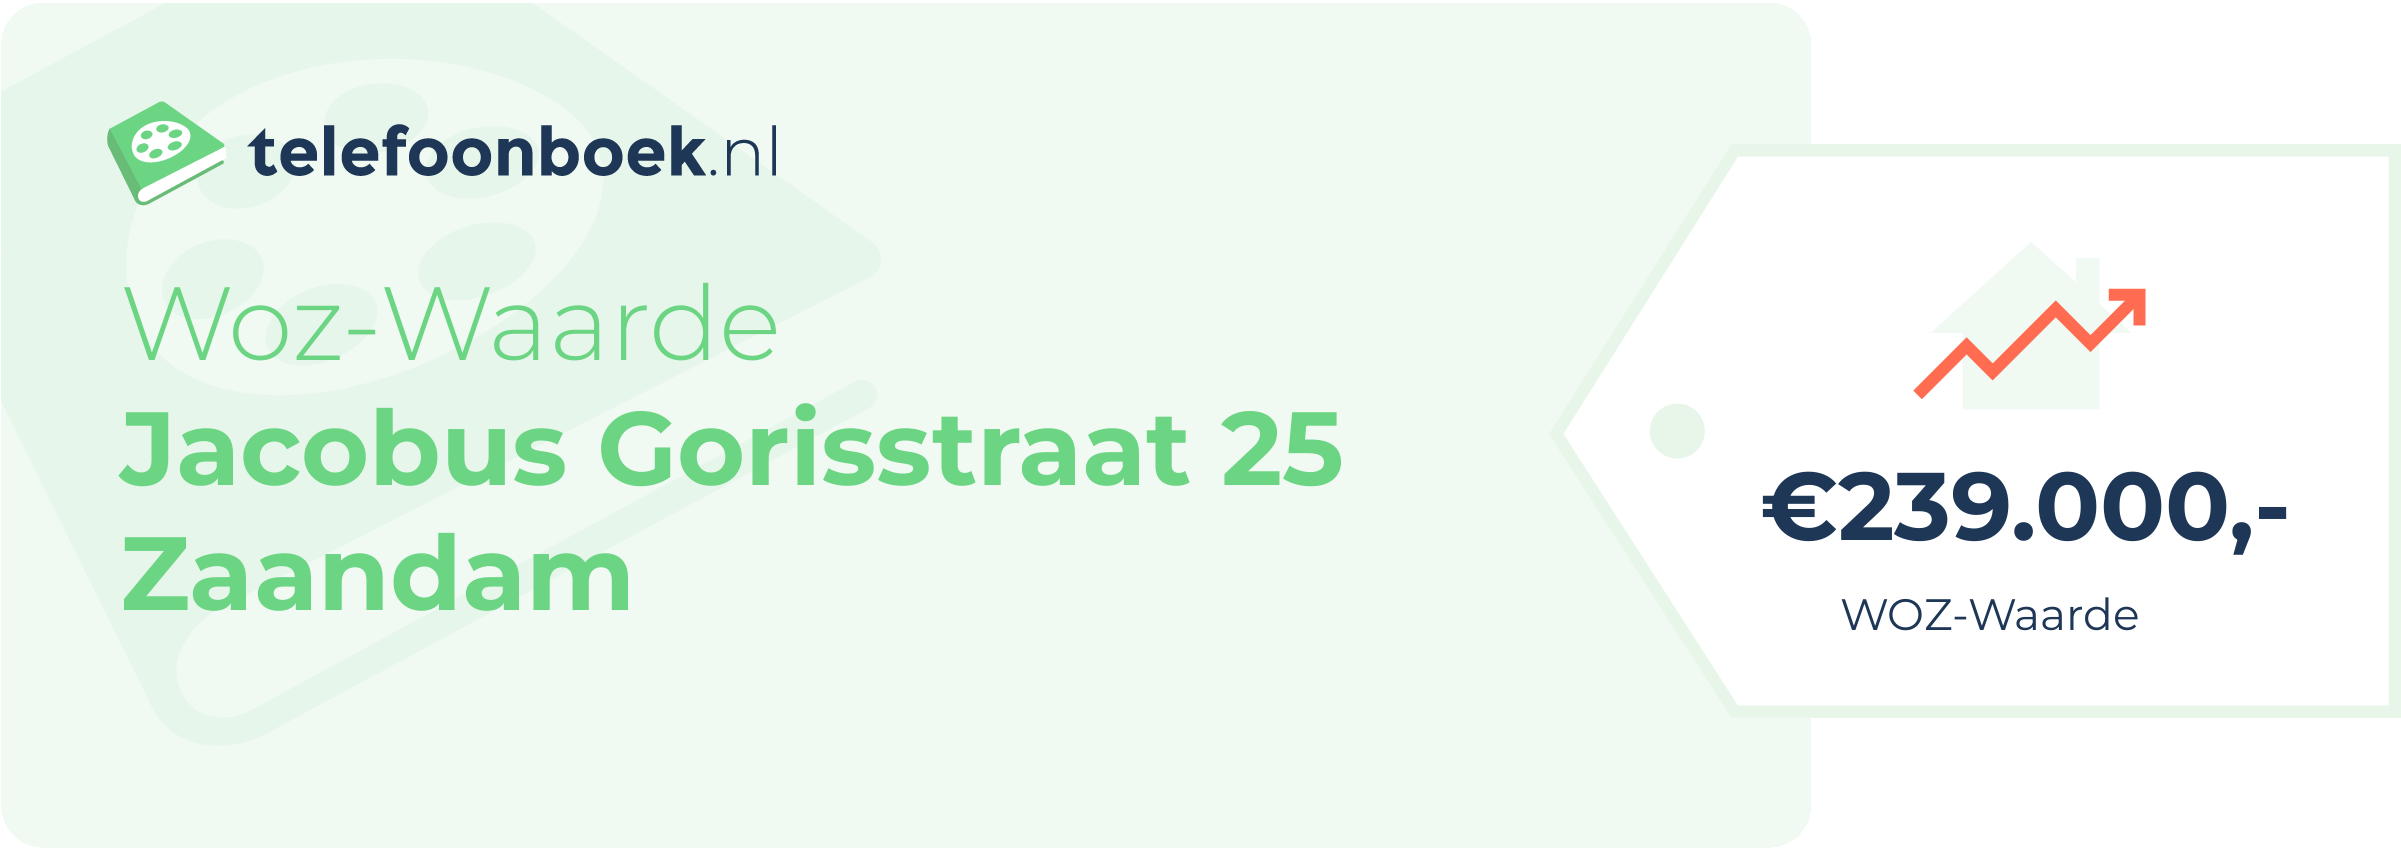 WOZ-waarde Jacobus Gorisstraat 25 Zaandam